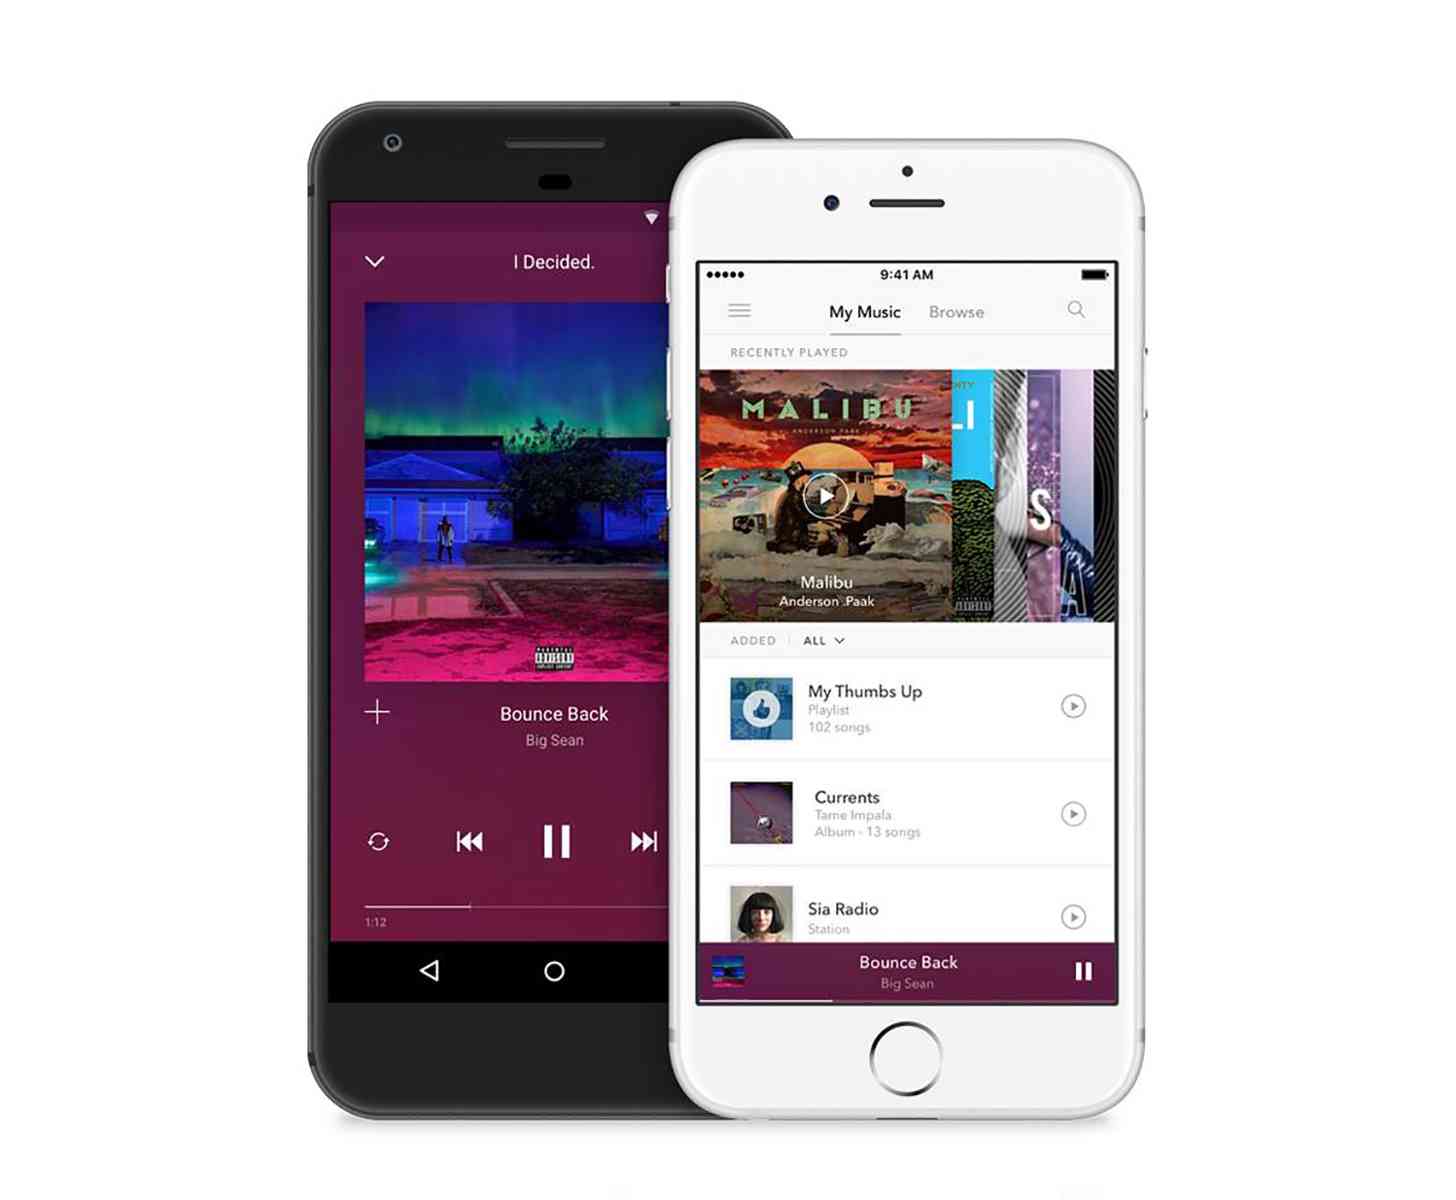 Pandora Premium Android iPhone apps